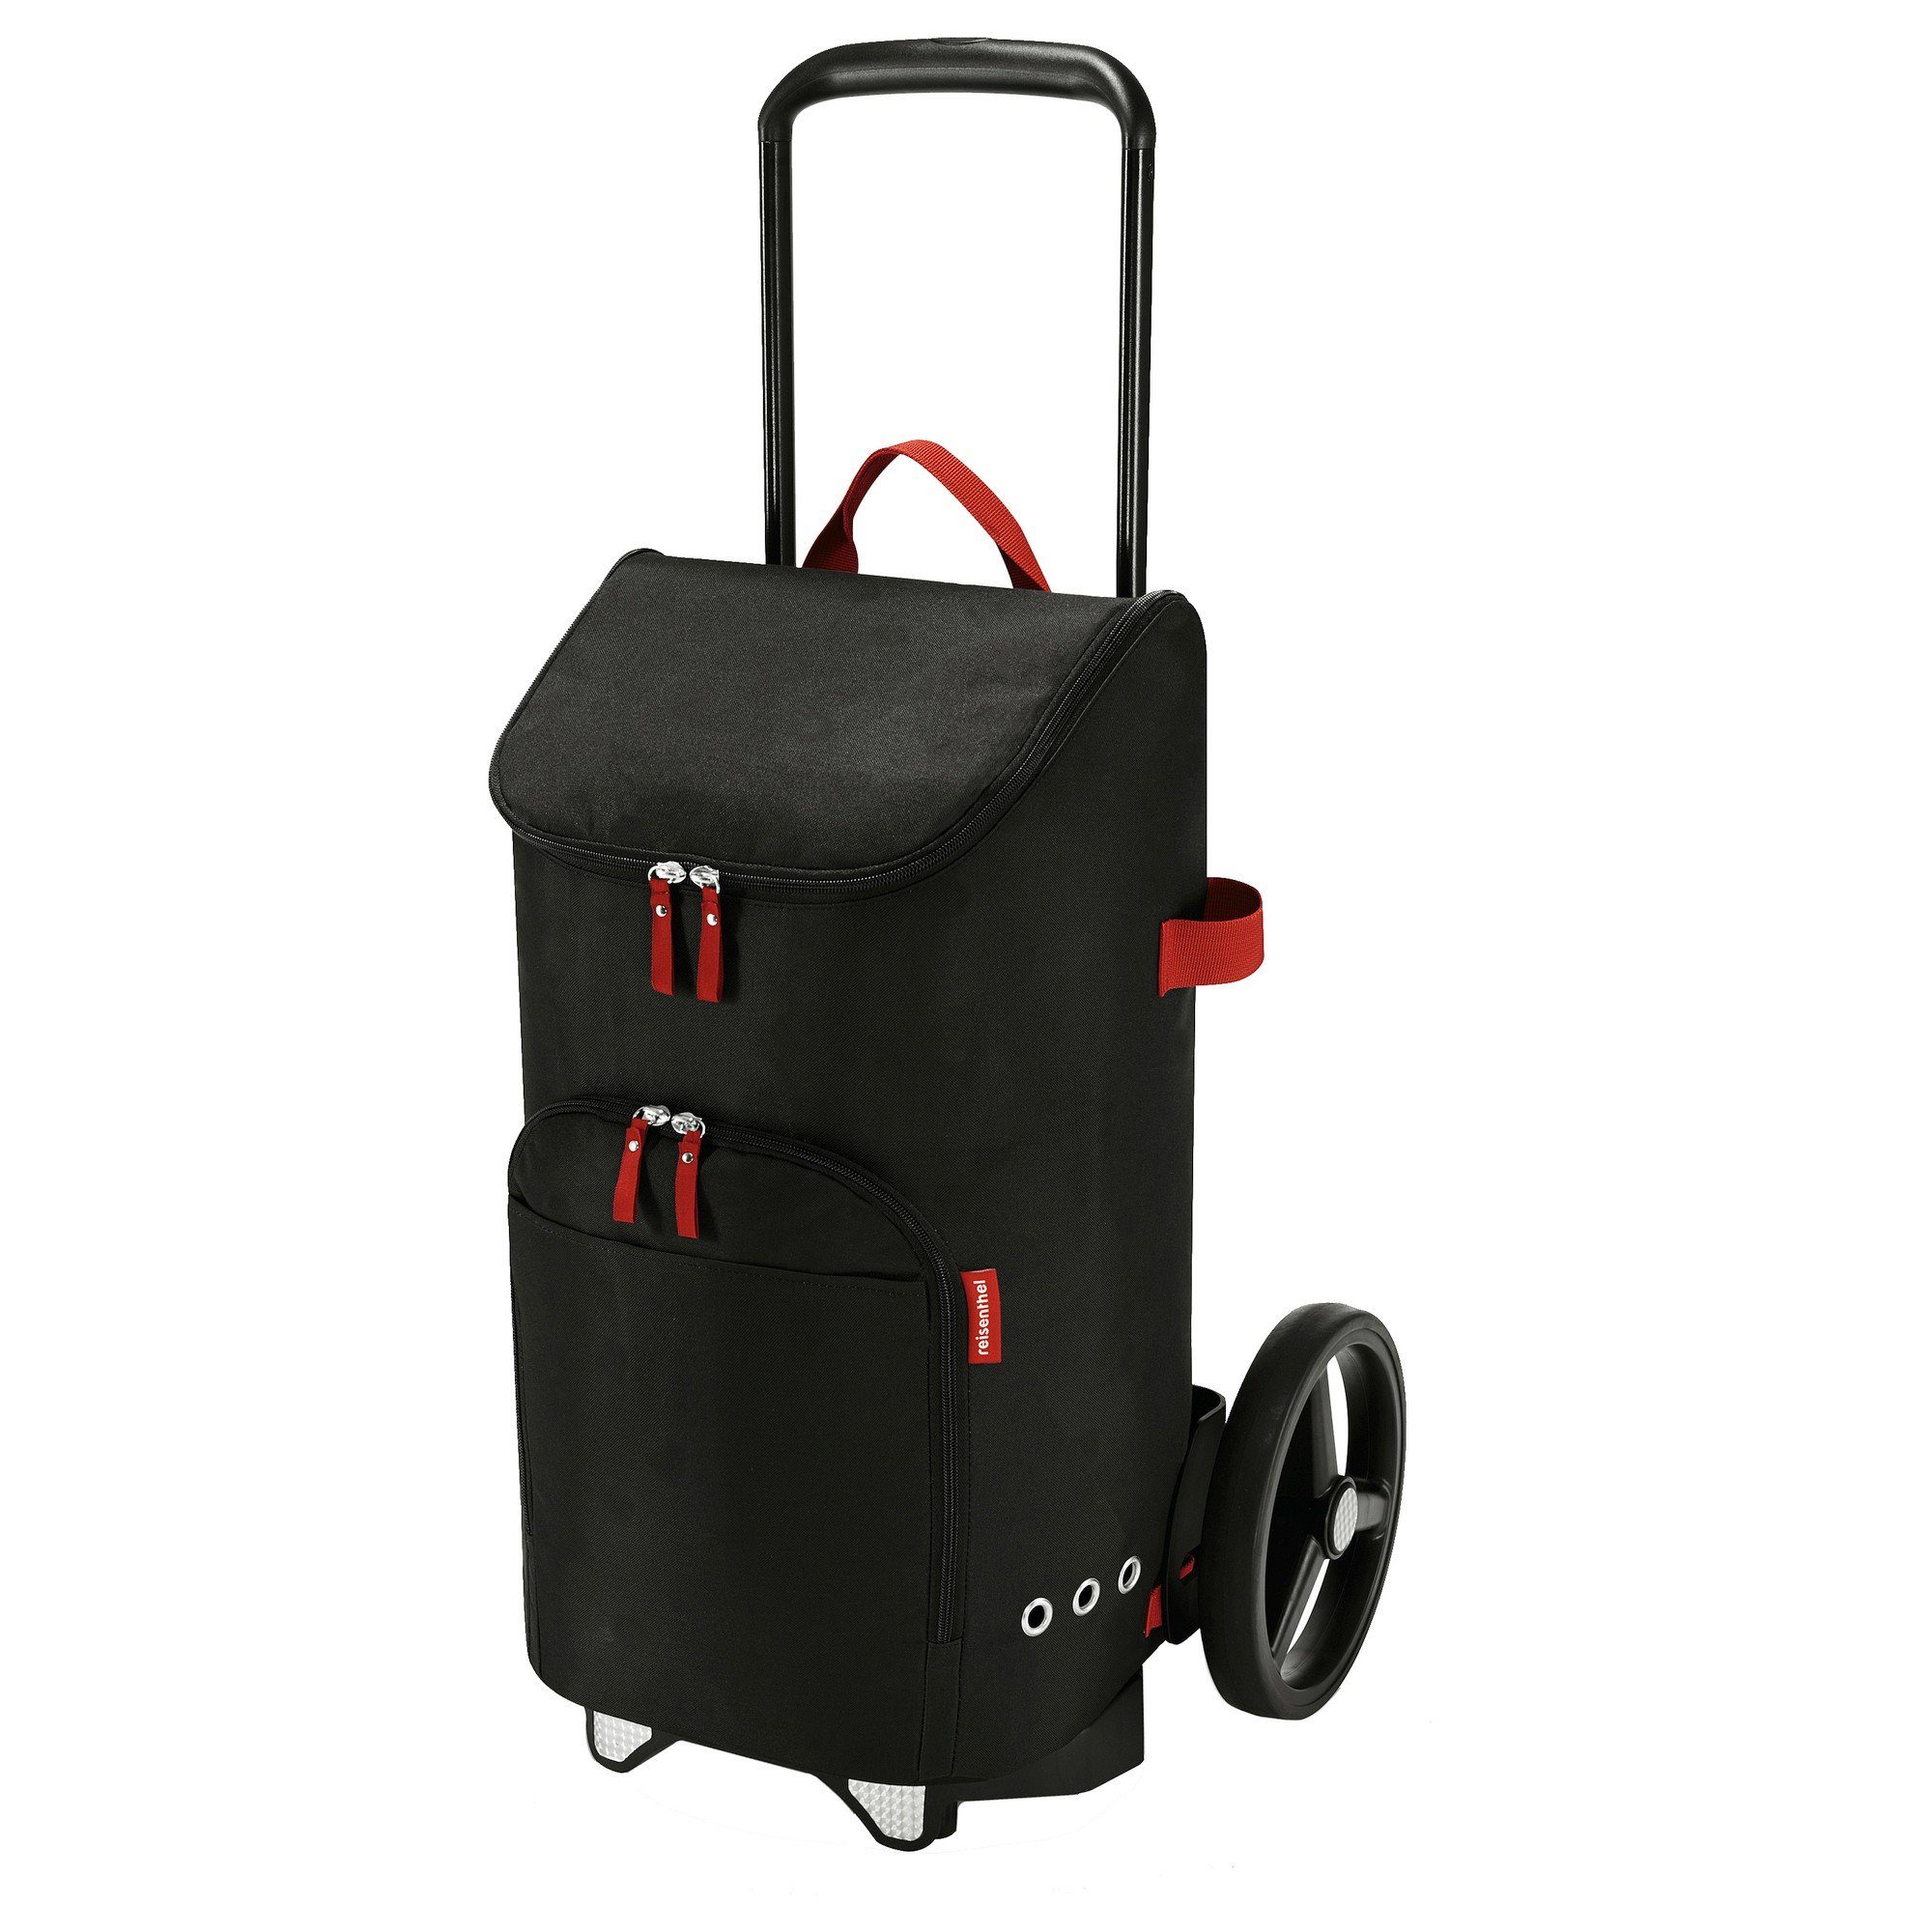 REISENTHEL® Einkaufsbeutel citycruiser bag - l Einkaufstasche 45 cm, 60 black